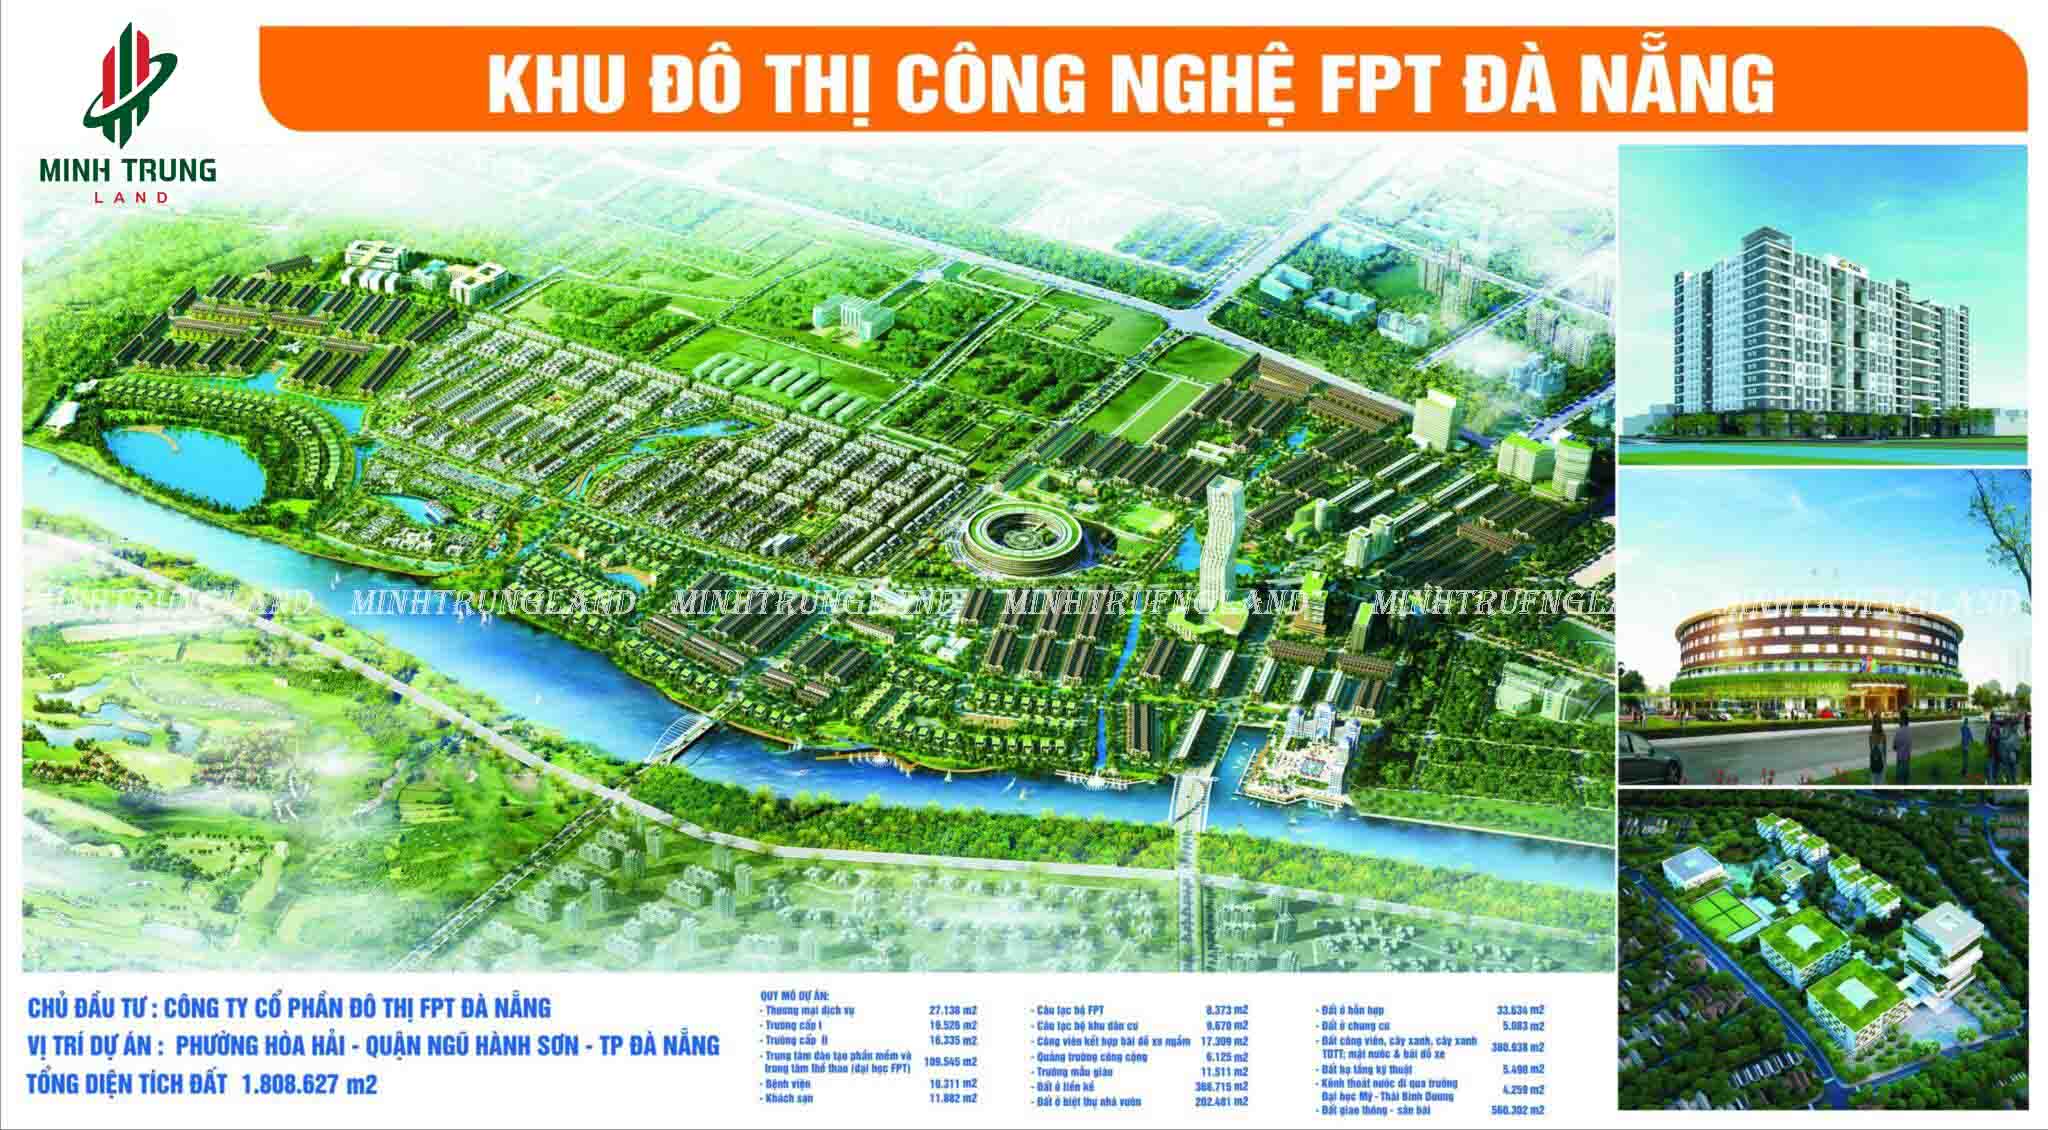 Khu đô thị FPT - Tâm điểm của sự phát triển Đà Nẵng